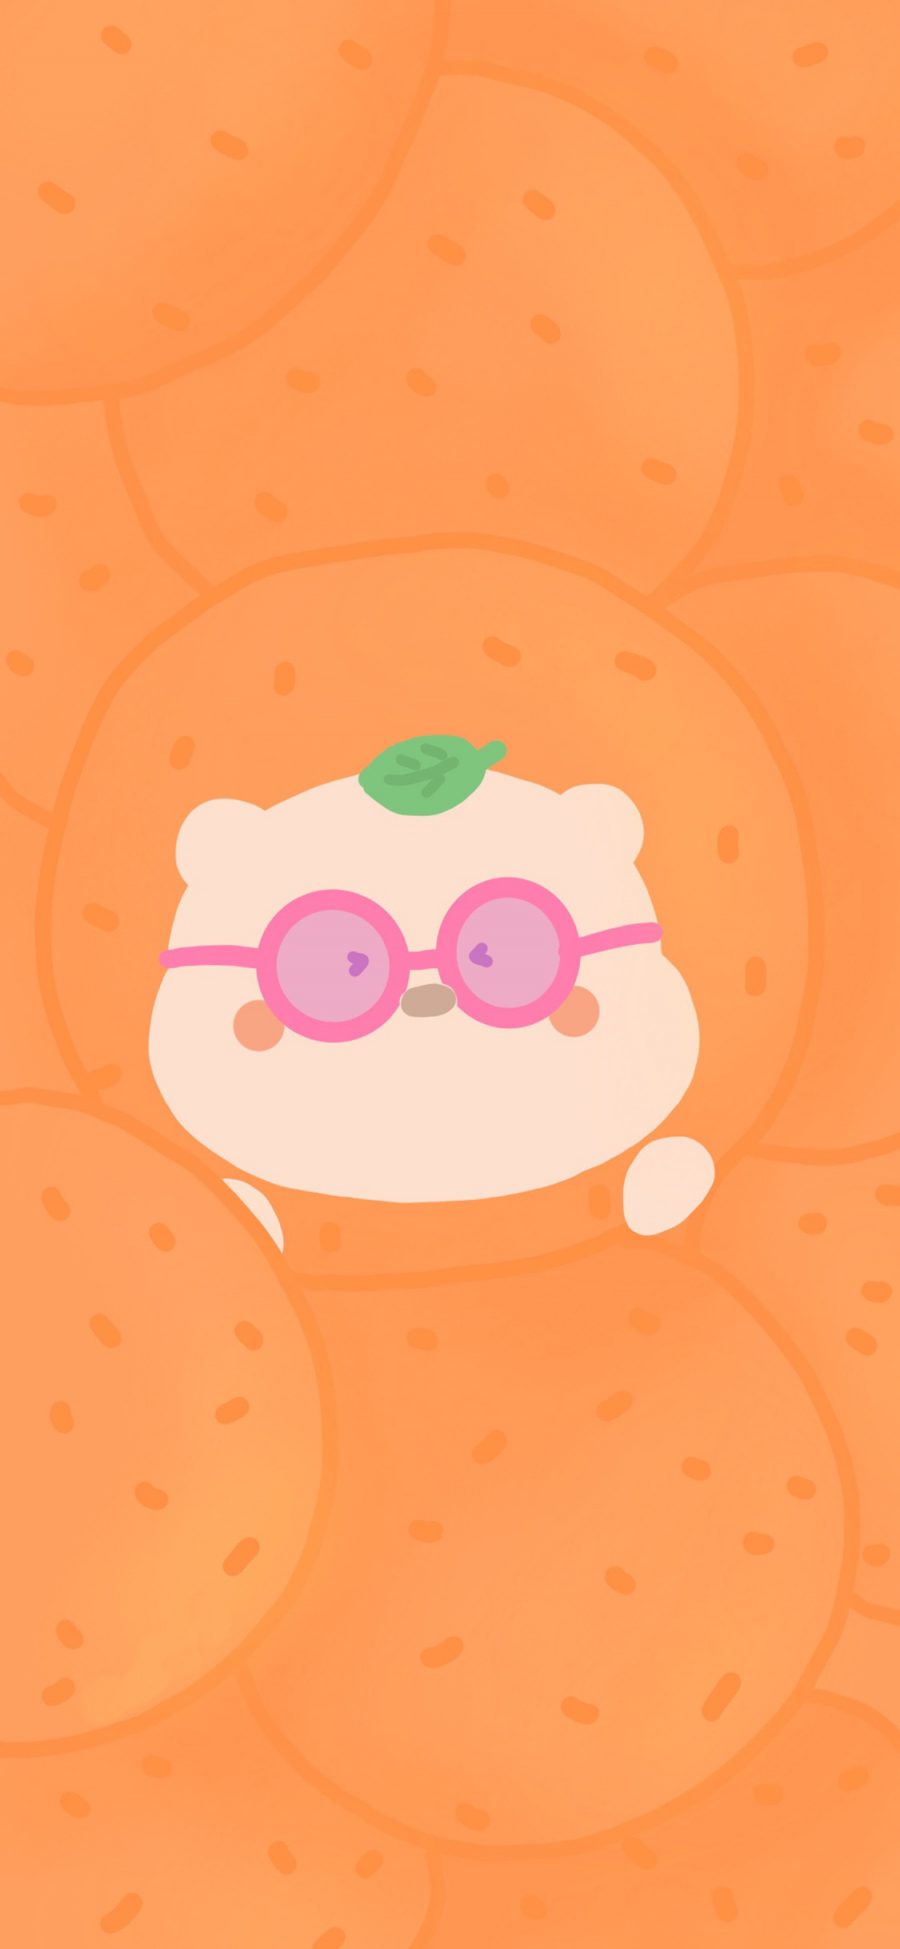 [2436×1125]小熊 橙色 可爱 卡通 苹果手机动漫壁纸图片